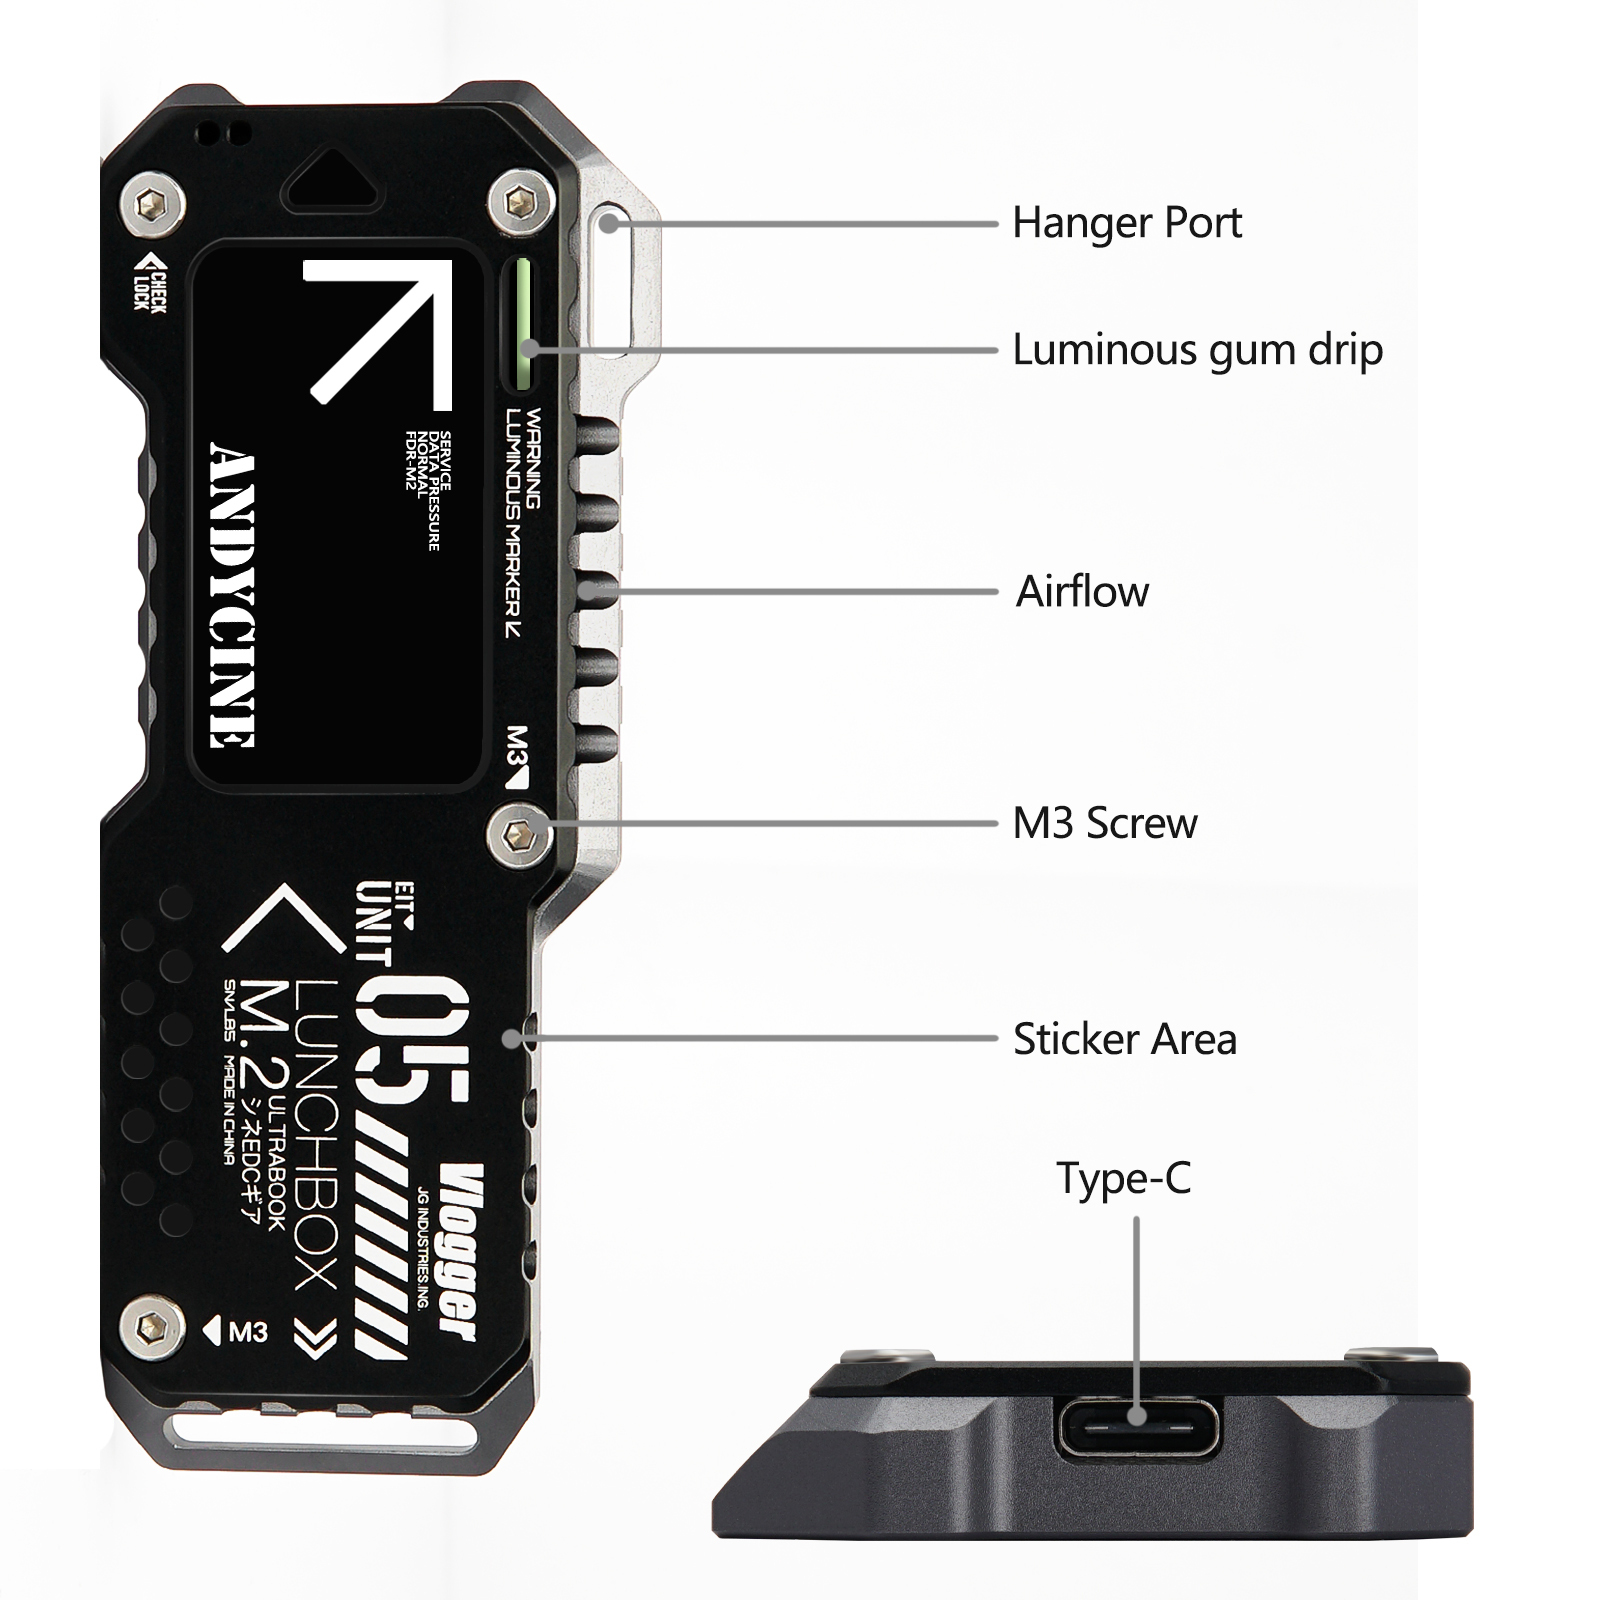 at opfinde berømmelse moderat ANDYCINE Lunchbox V M.2 SSD Enclosure For M.2 NVMe or M.2 SATA SSD